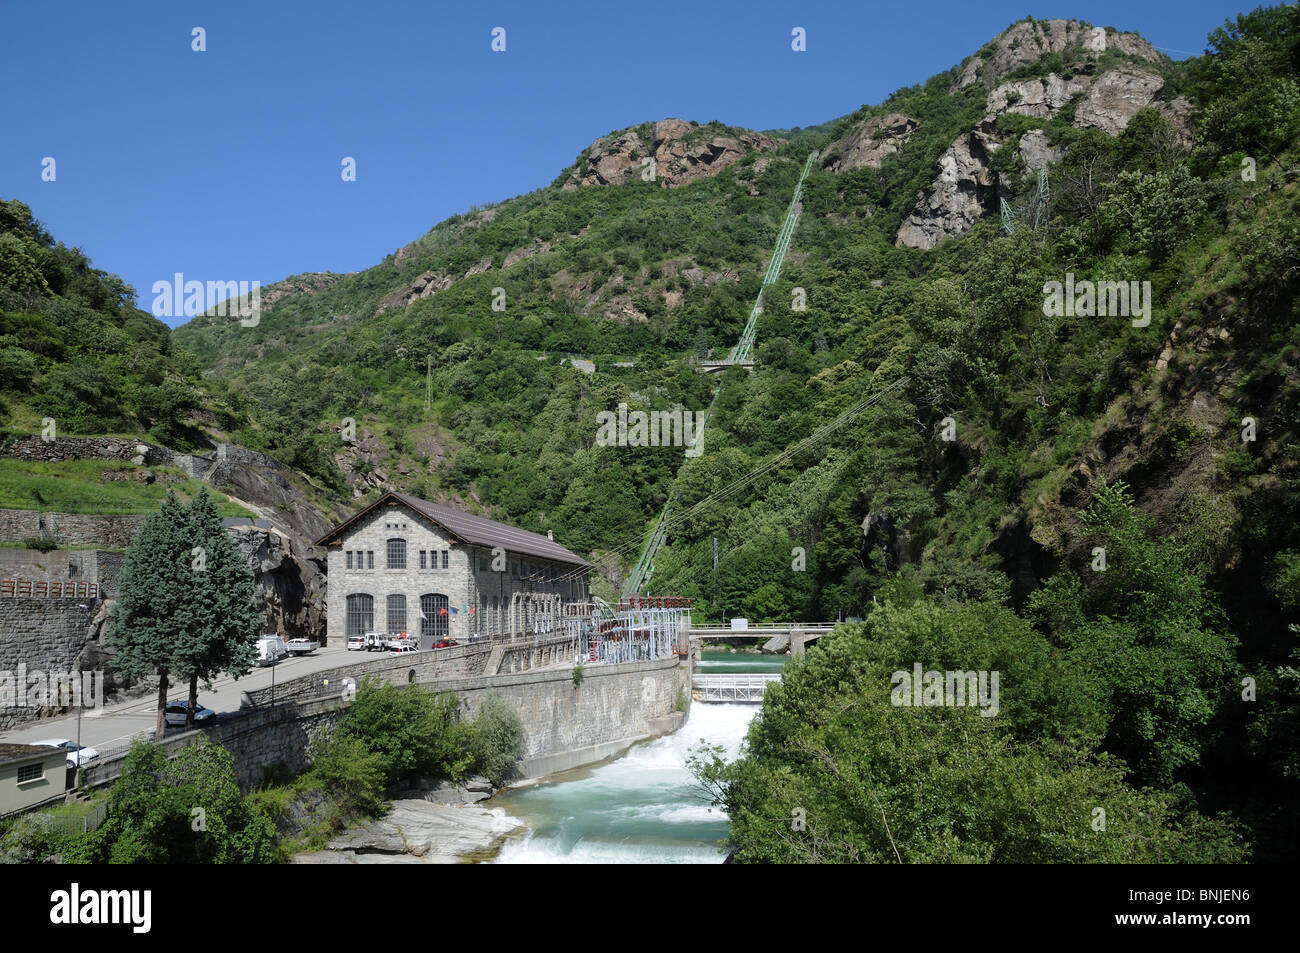 Idro di un generatore di potenza elettrica e il torrente Lys Pont St Martin Valle d'Aosta Italia i tubi che trasportano acqua di montagna verso il basso può essere visto Foto Stock